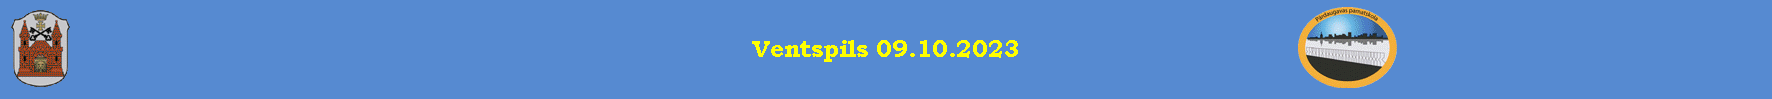 Ventspils 09.10.2023